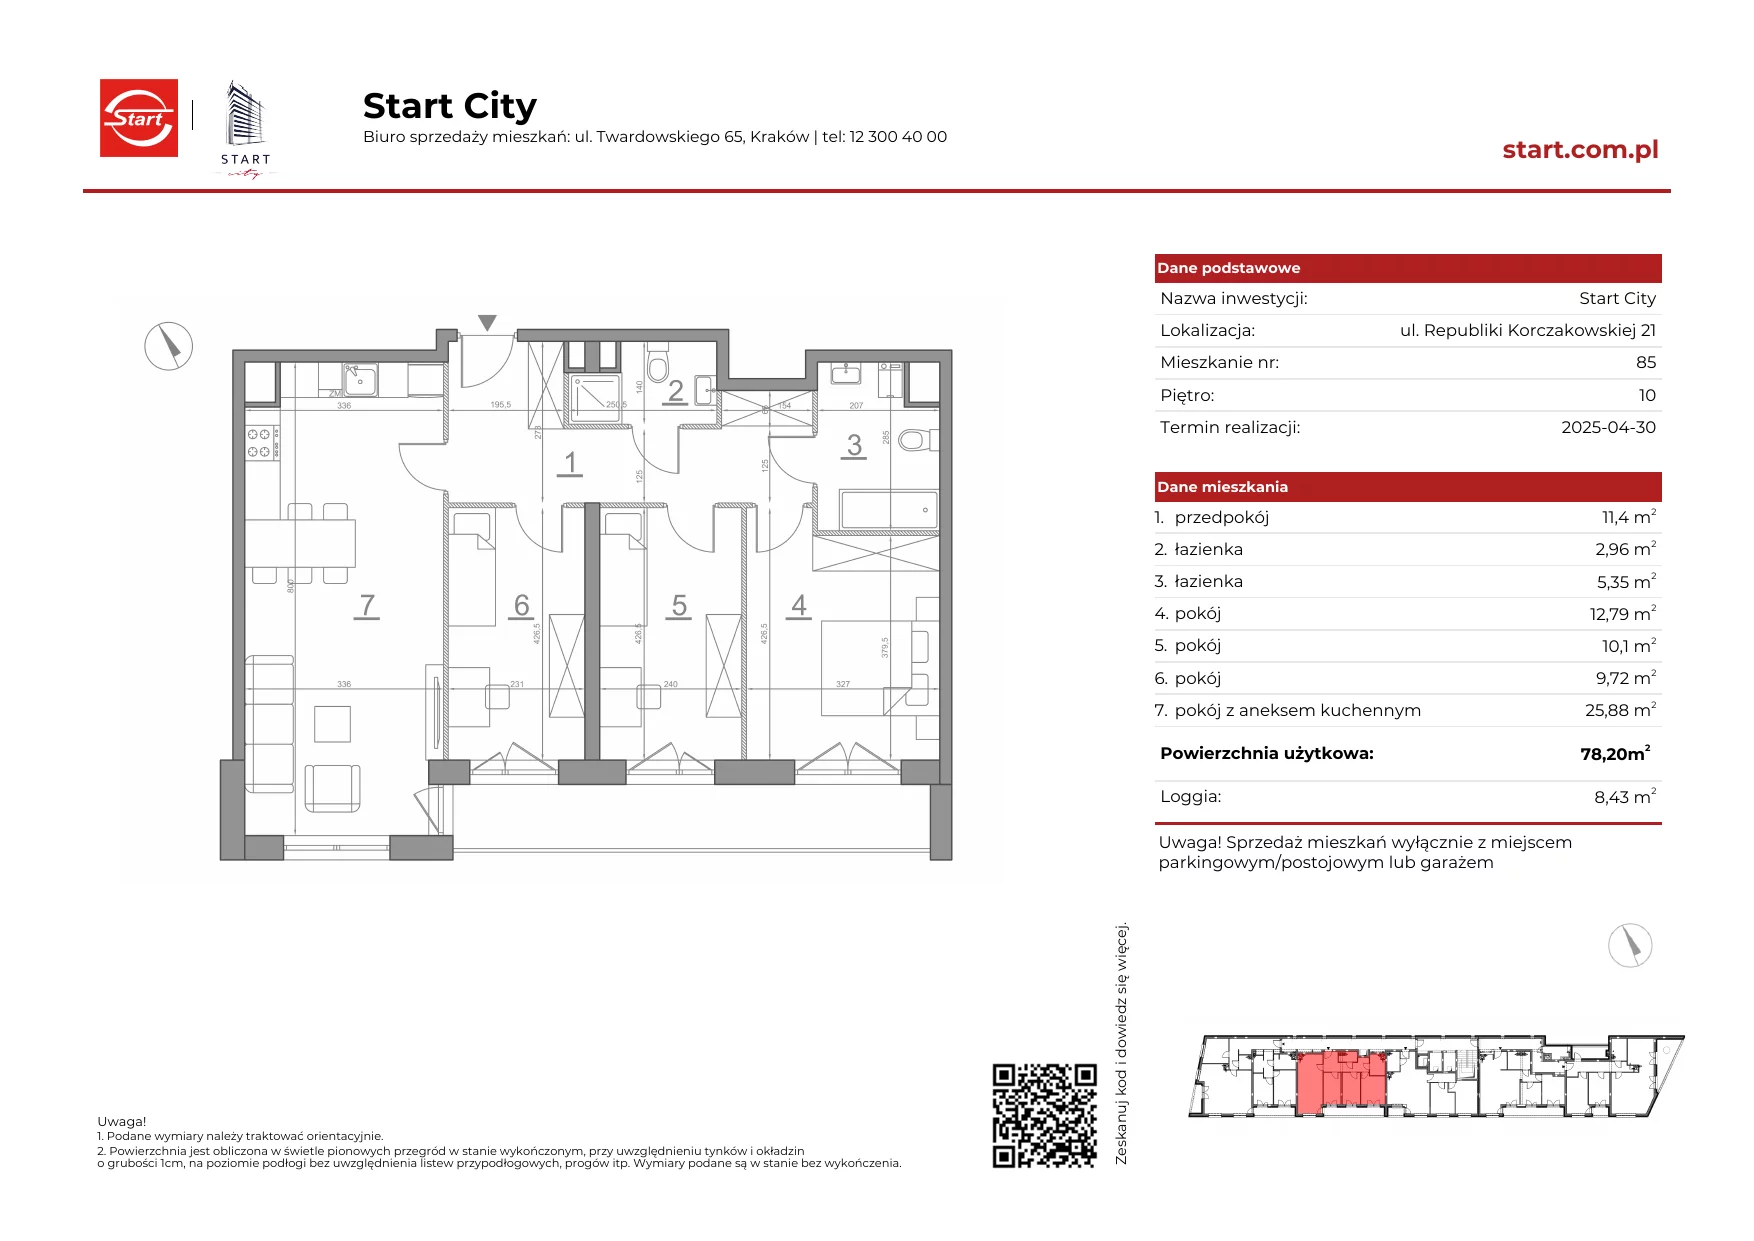 Mieszkanie 78,20 m², piętro 10, oferta nr 21/85, Start City, Kraków, Bieżanów-Prokocim, ul. Republiki Korczakowskiej 21